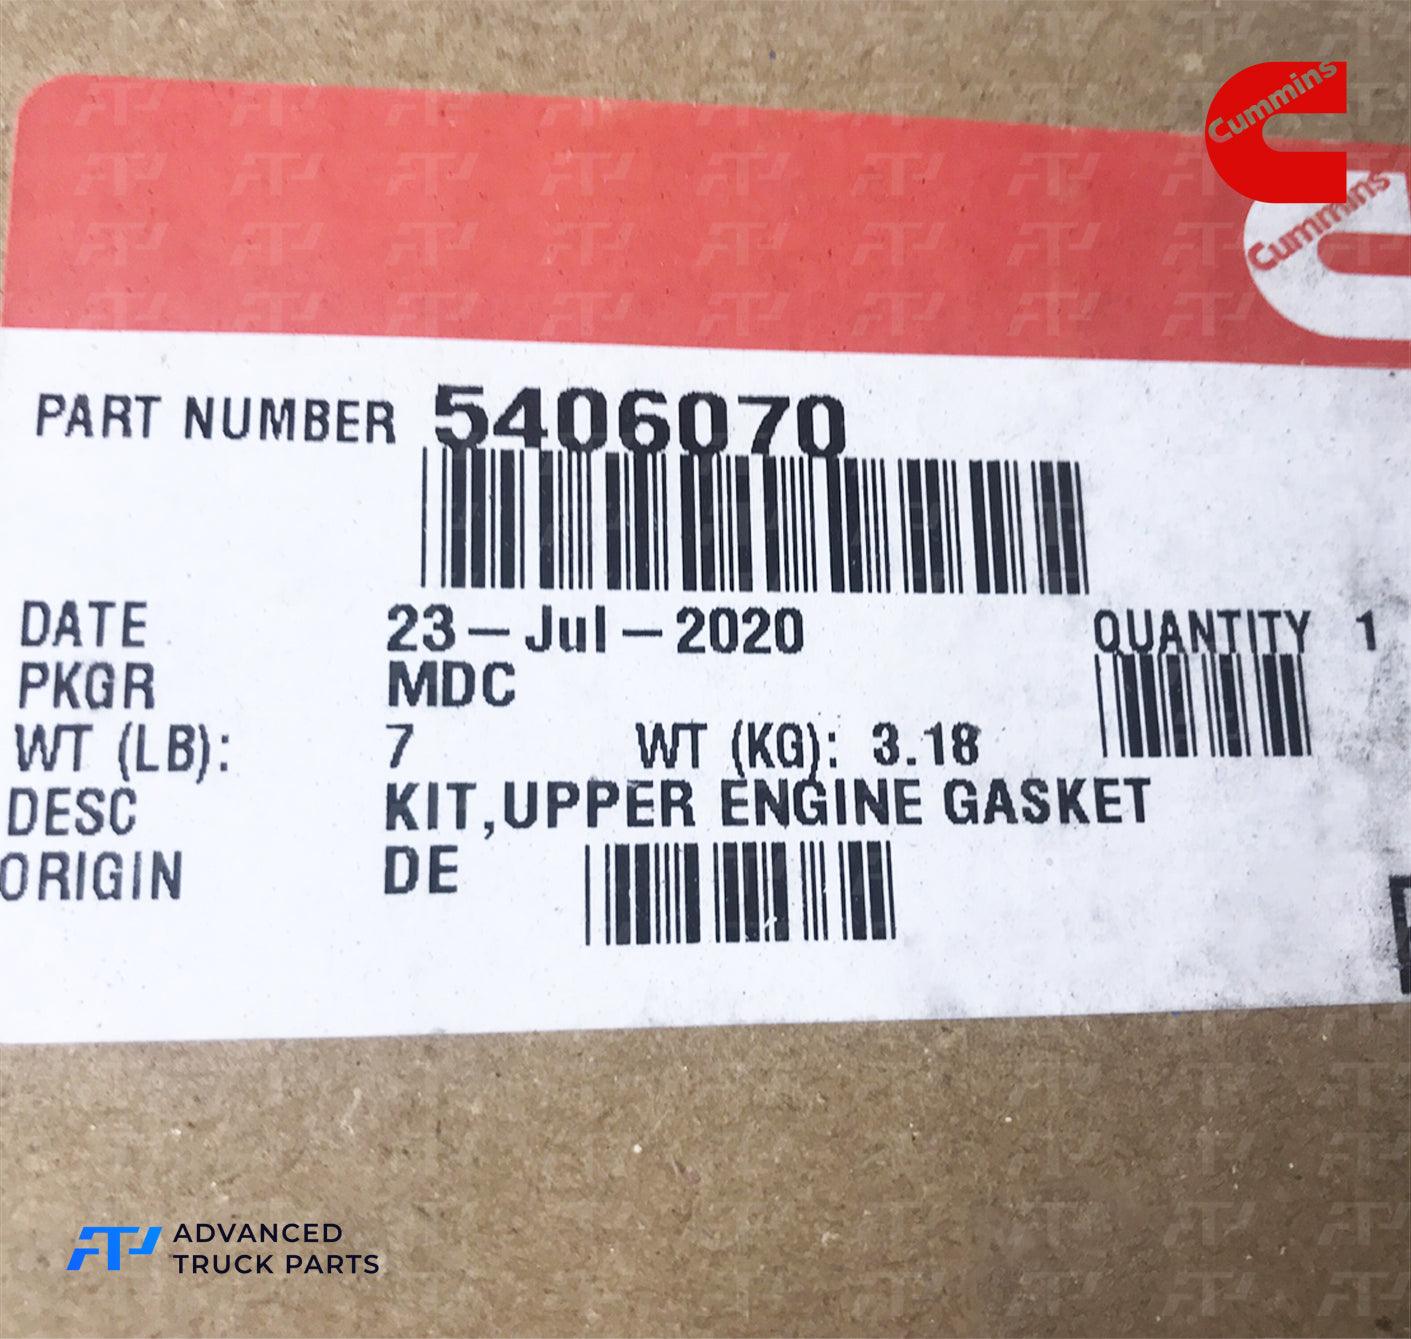 5406070 Genuine Cummins® Kit Upper Engine Gasket - ADVANCED TRUCK PARTS